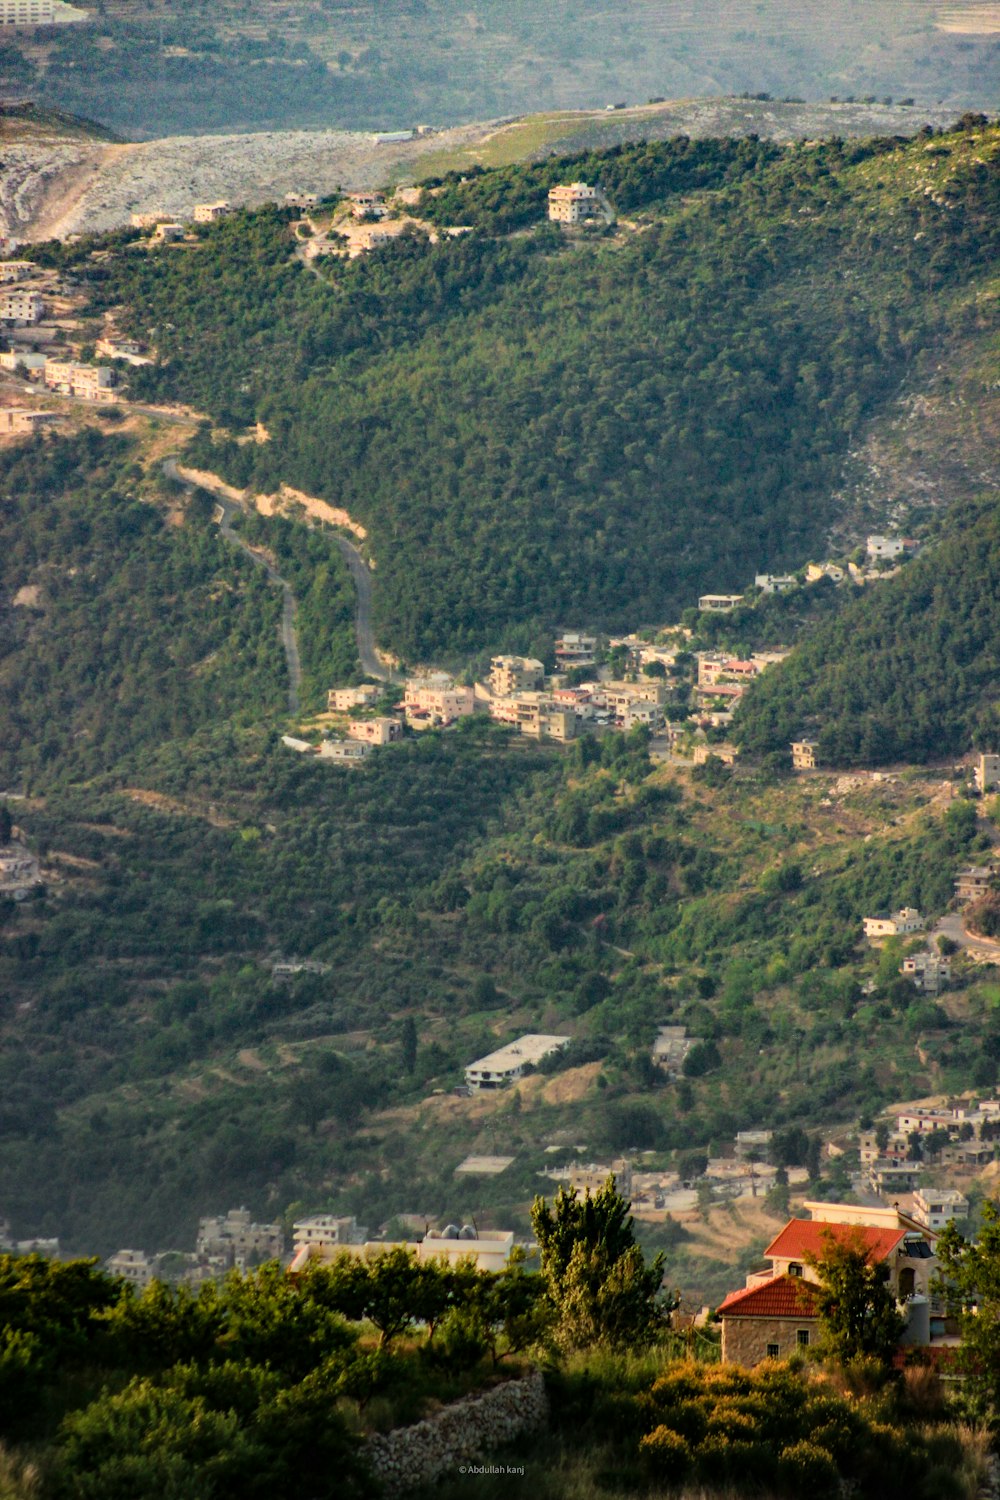 Una vista de una ciudad enclavada en una montaña